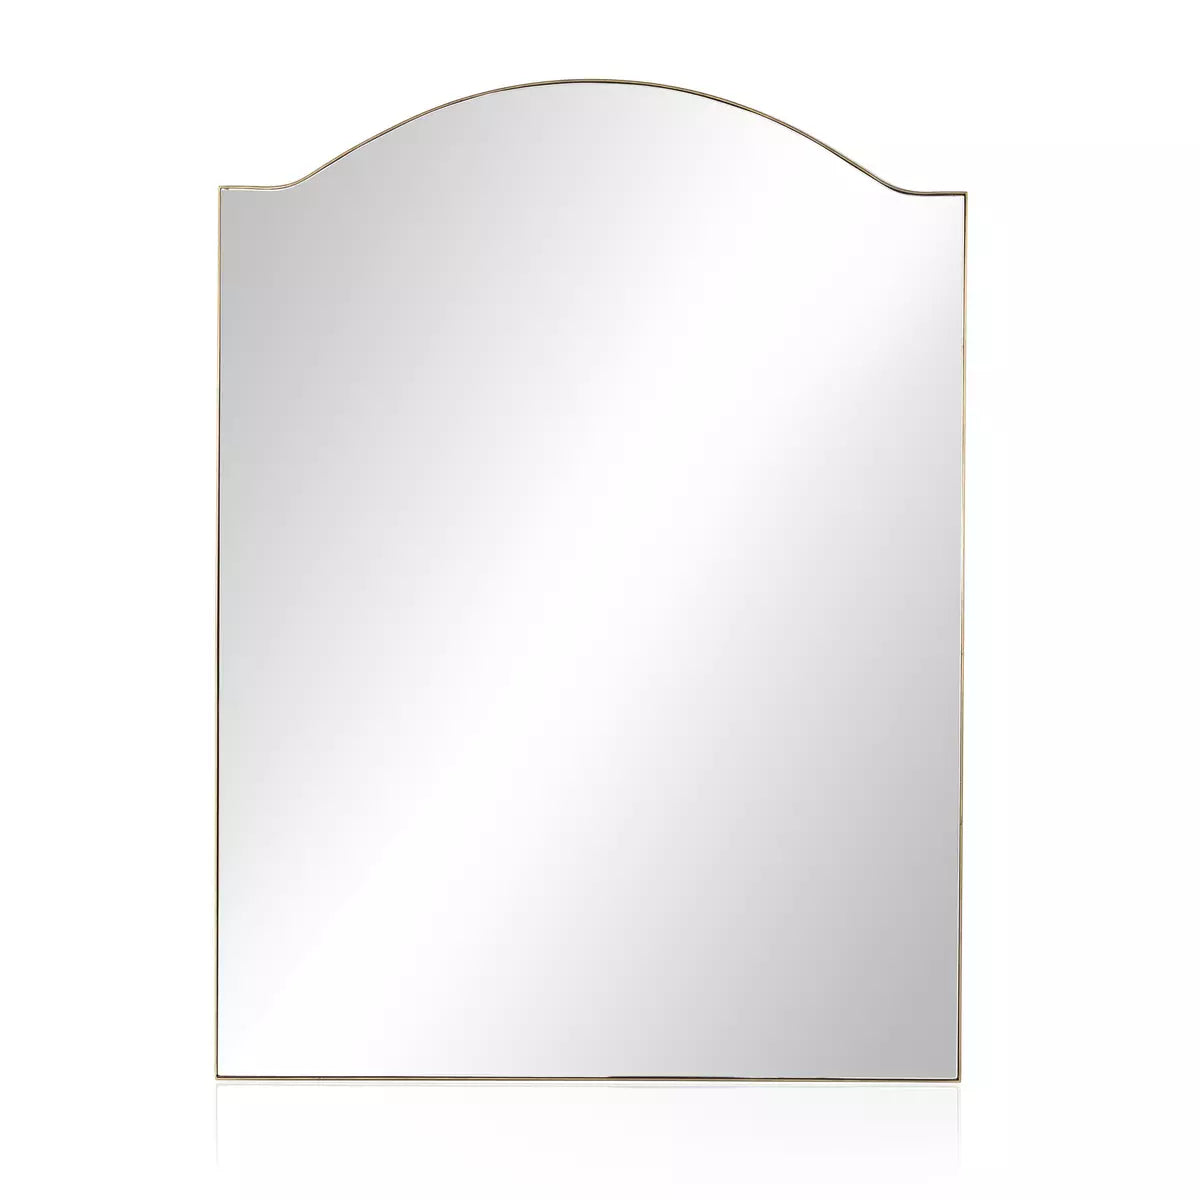 228729-002 Jaques Floor Mirror in Antique Brass